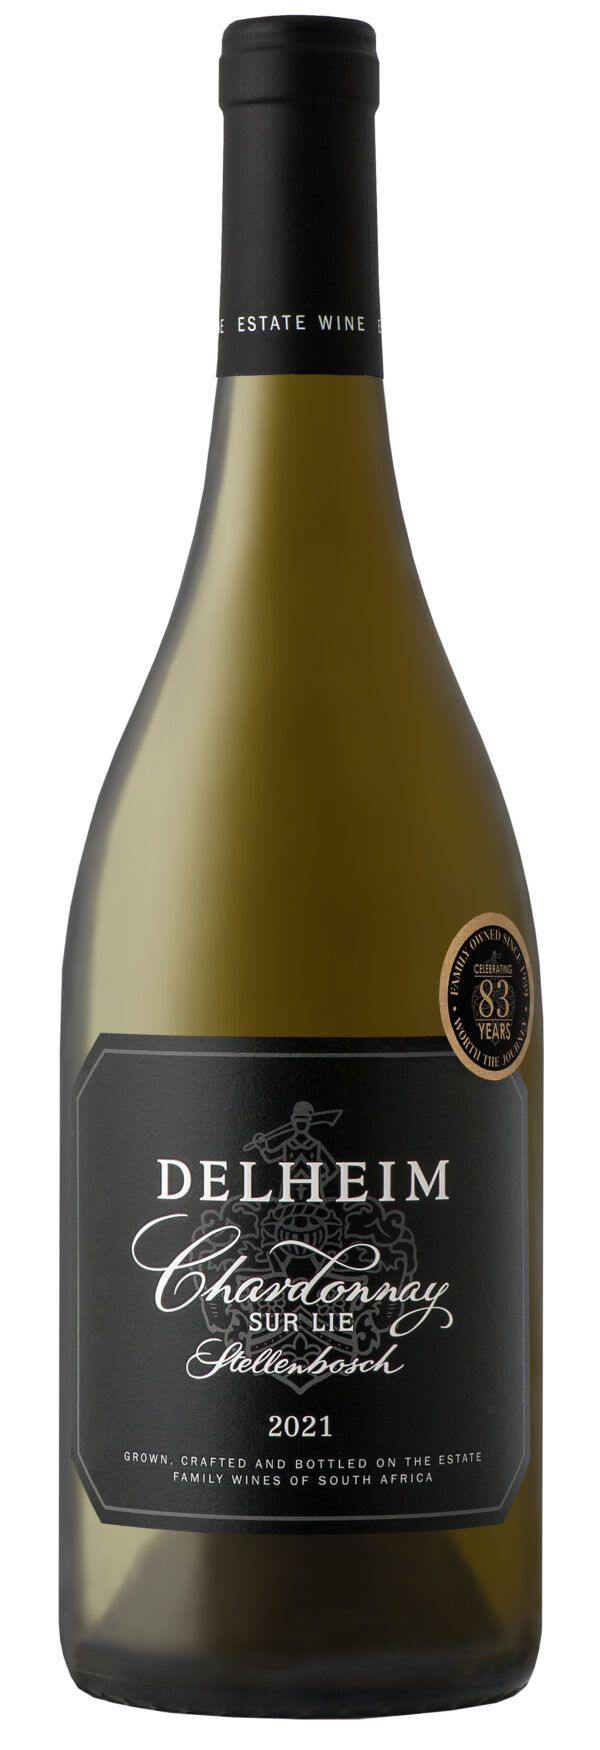 Delheim Chardonnay Sur Lie 2021